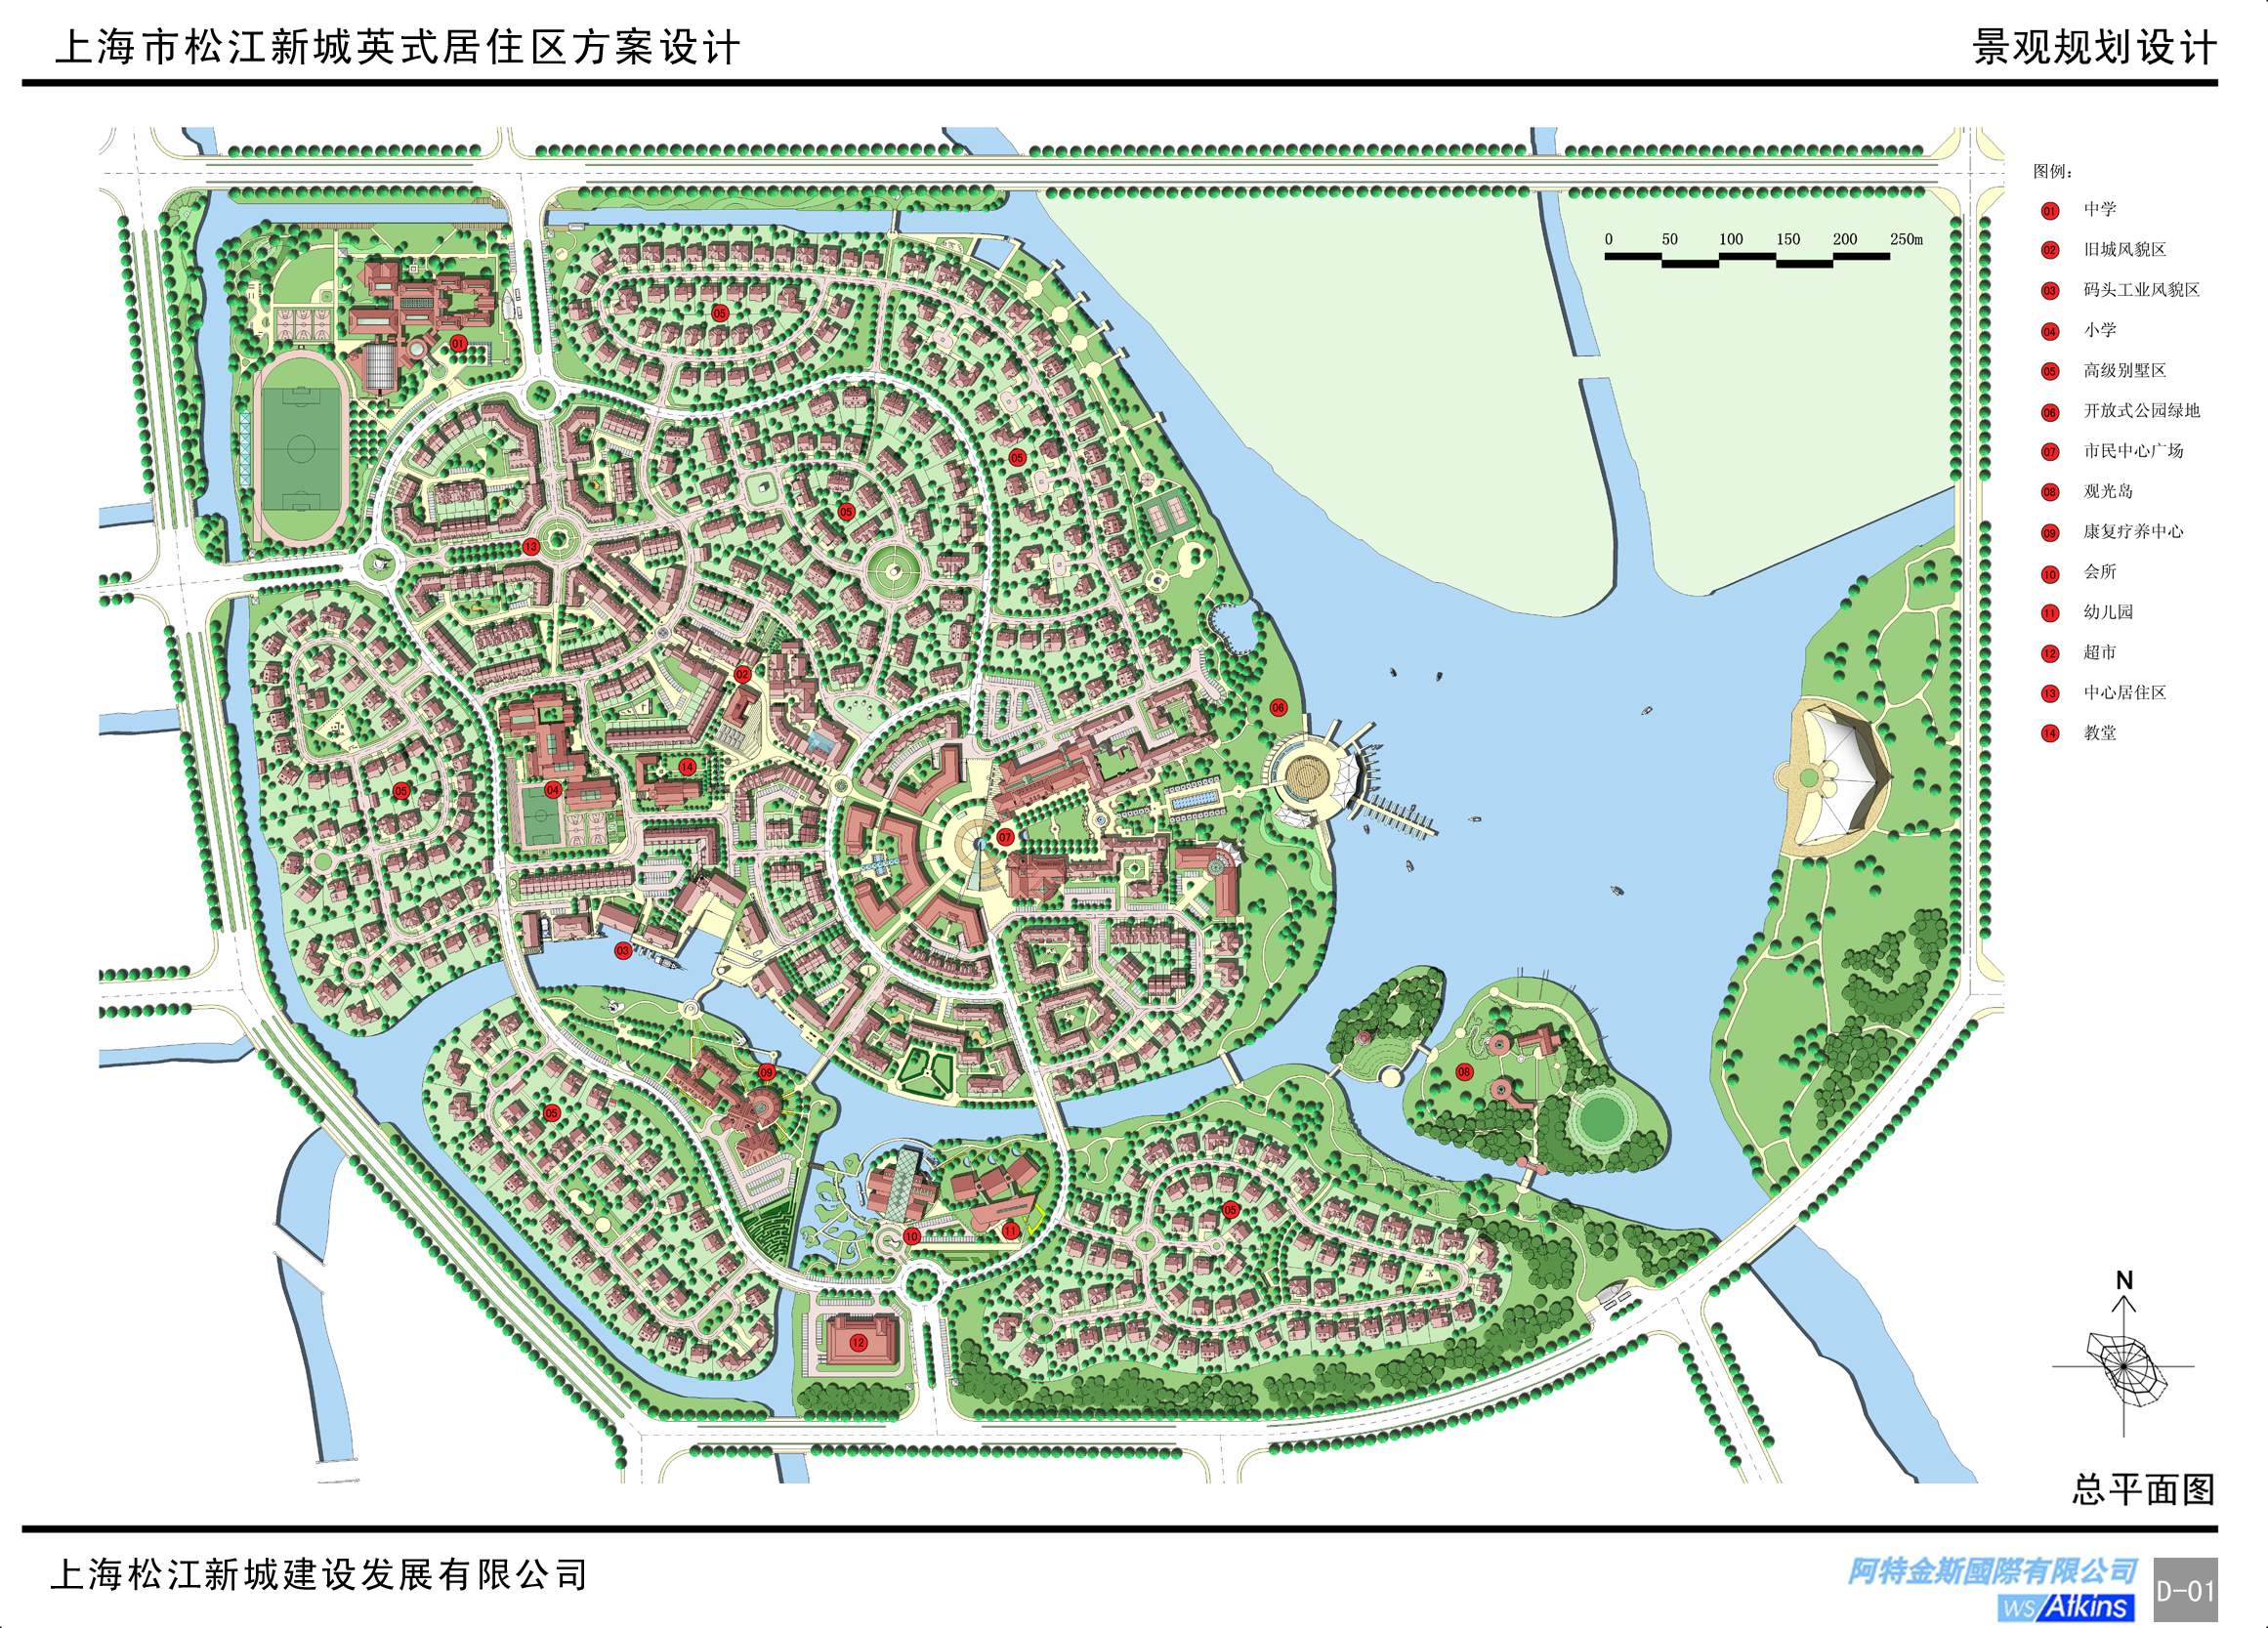 上海松江新城英国小镇居住区方案设计